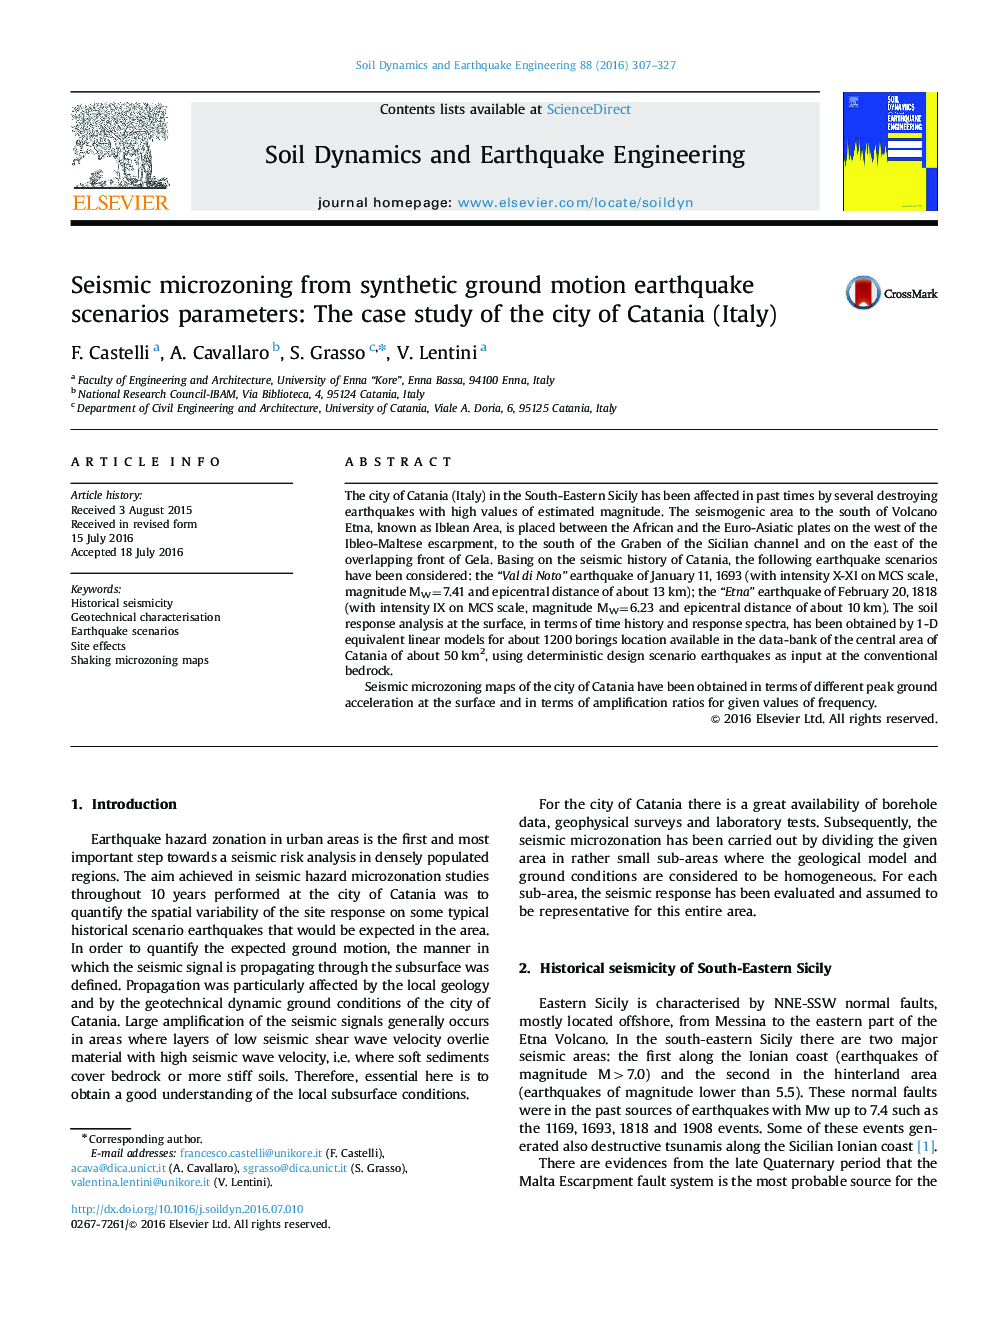 ریزنشت لرزه ای از پارامترهای سناریوی زلزله حرکت مصنوعی زمین: مطالعه موردی شهرستان کاتانیا (ایتالیا) 